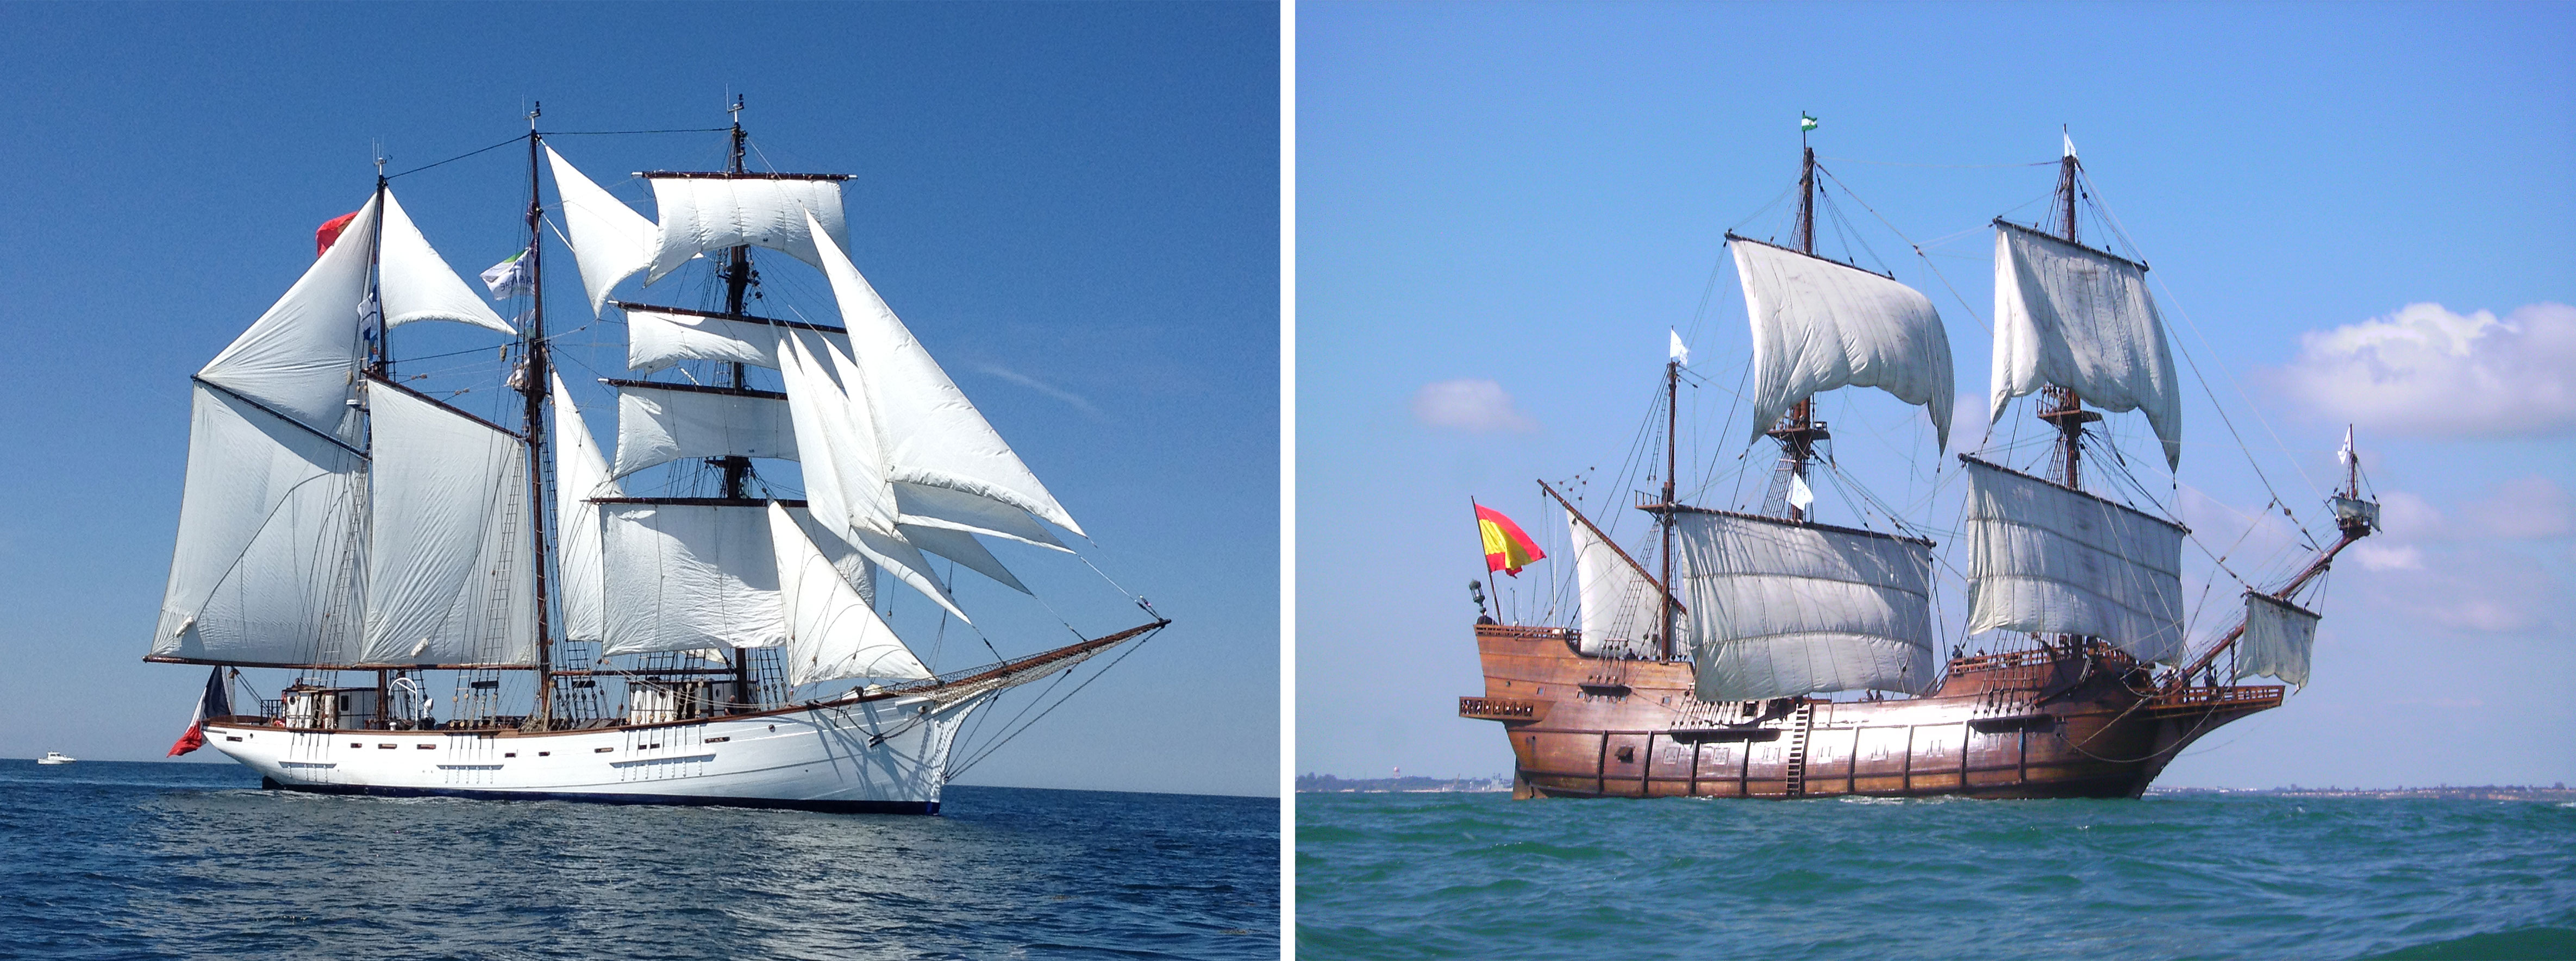 Le Marité et Le Galéon, 2 des bateaux présents lors de la Fête du Vin - Crédits : <sup>©</sup>-GIP-Marité et Savannah Waterfront Association